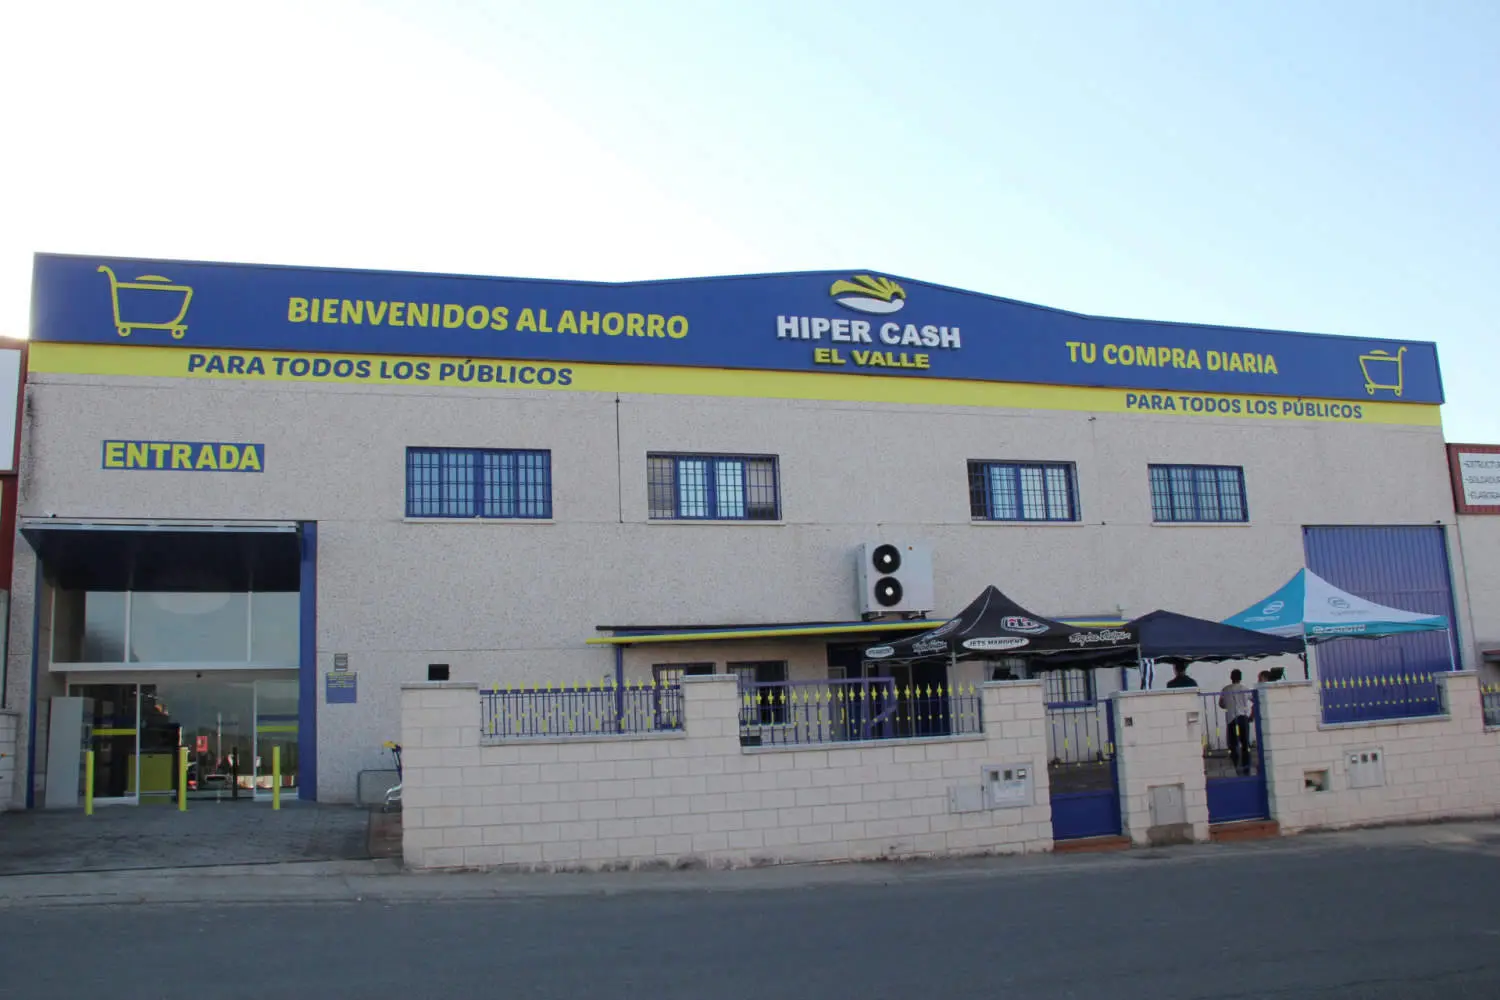 Hipermercado supermercado en Sotillo de la Adrada, Valle del Tiétar sur de Gredos. Autoservicio alimentación comida y bebidas alimentos gourmet carnicería